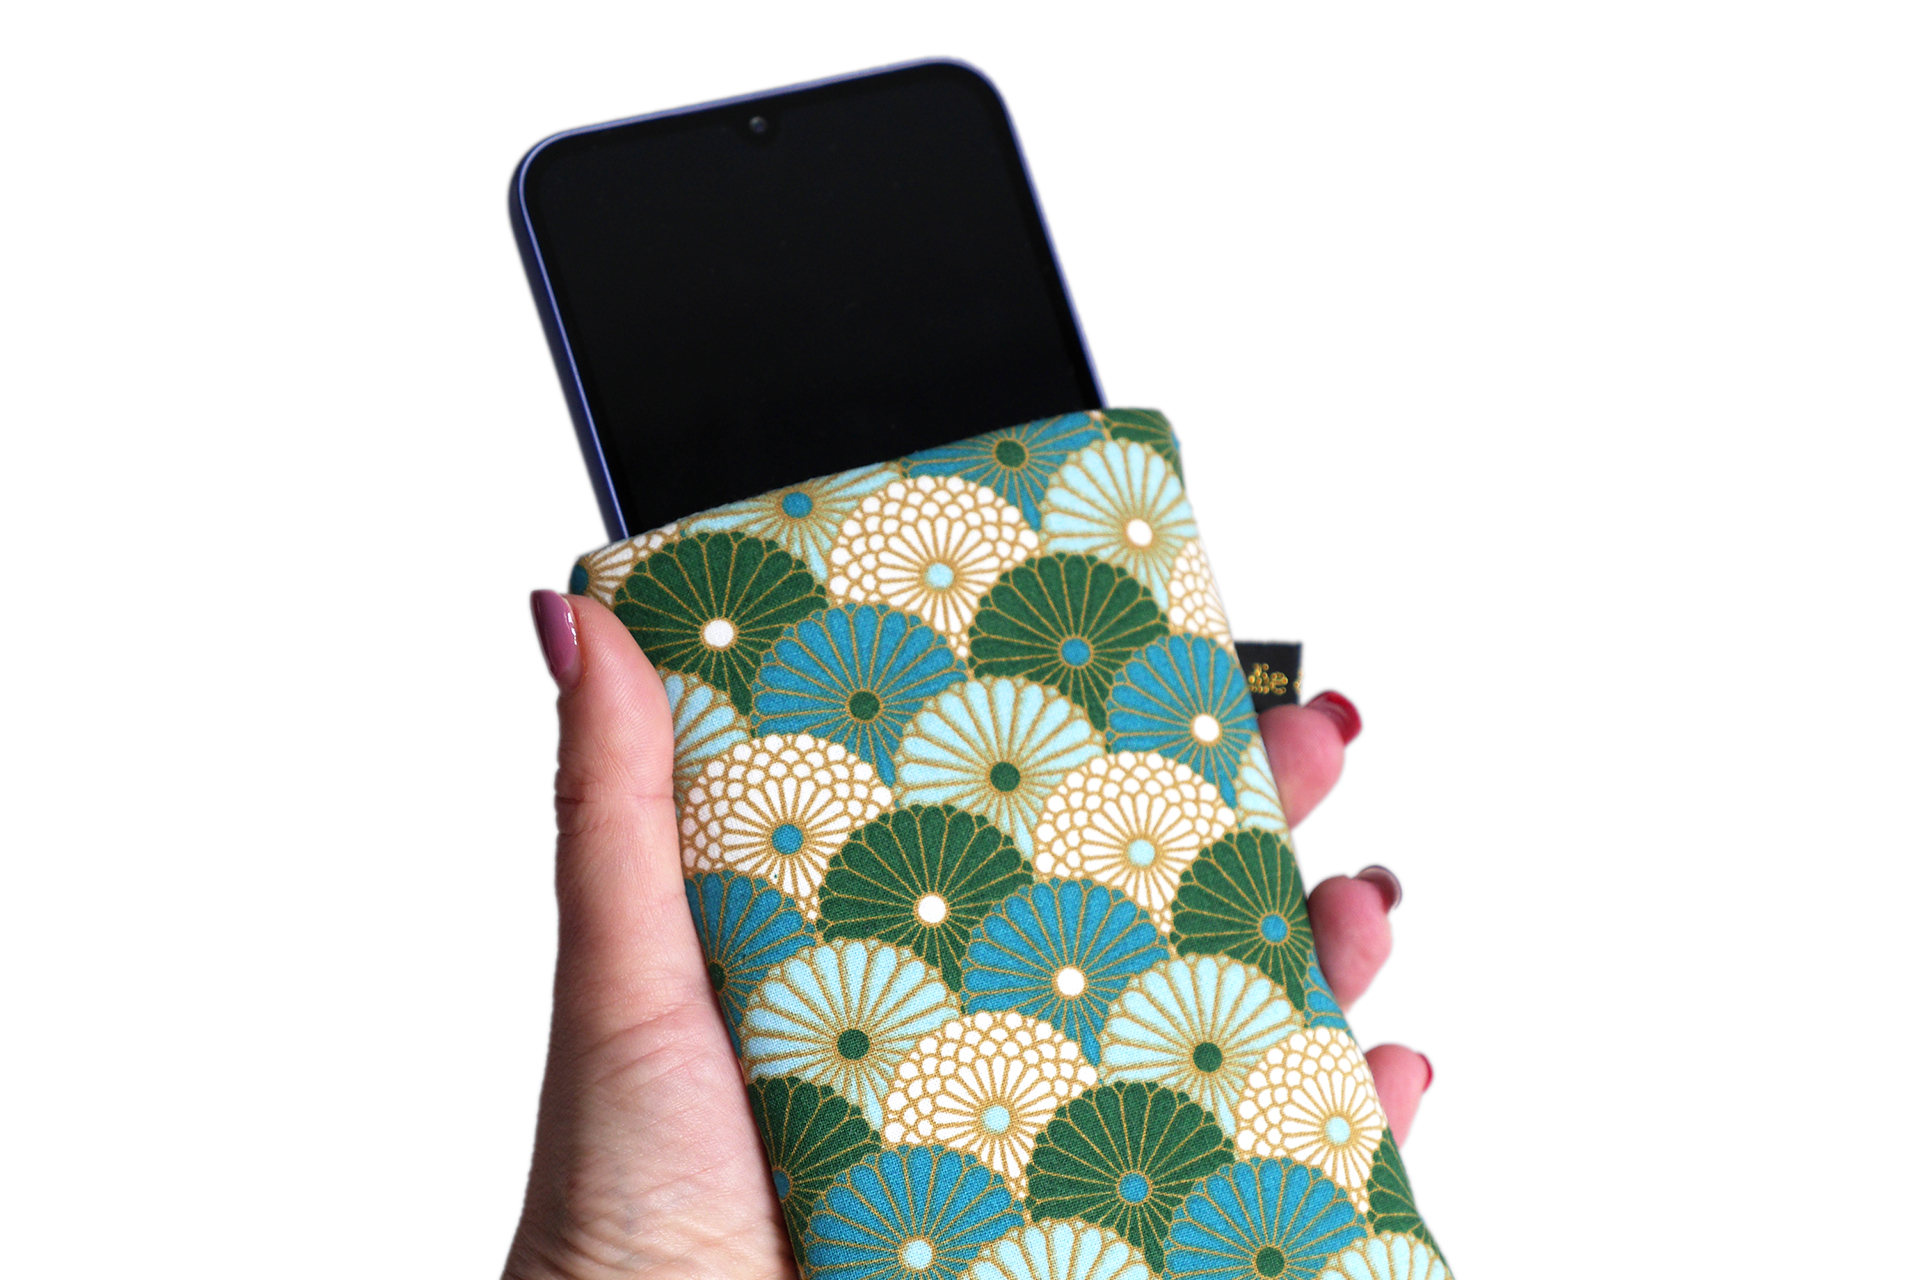 Housse téléphone chaussette tissu Hiro éventails fleurs graphique japonais bleu vert émeraude or élastique doré pochette portable iPhone Samsung fait main handmade - Julie & COo